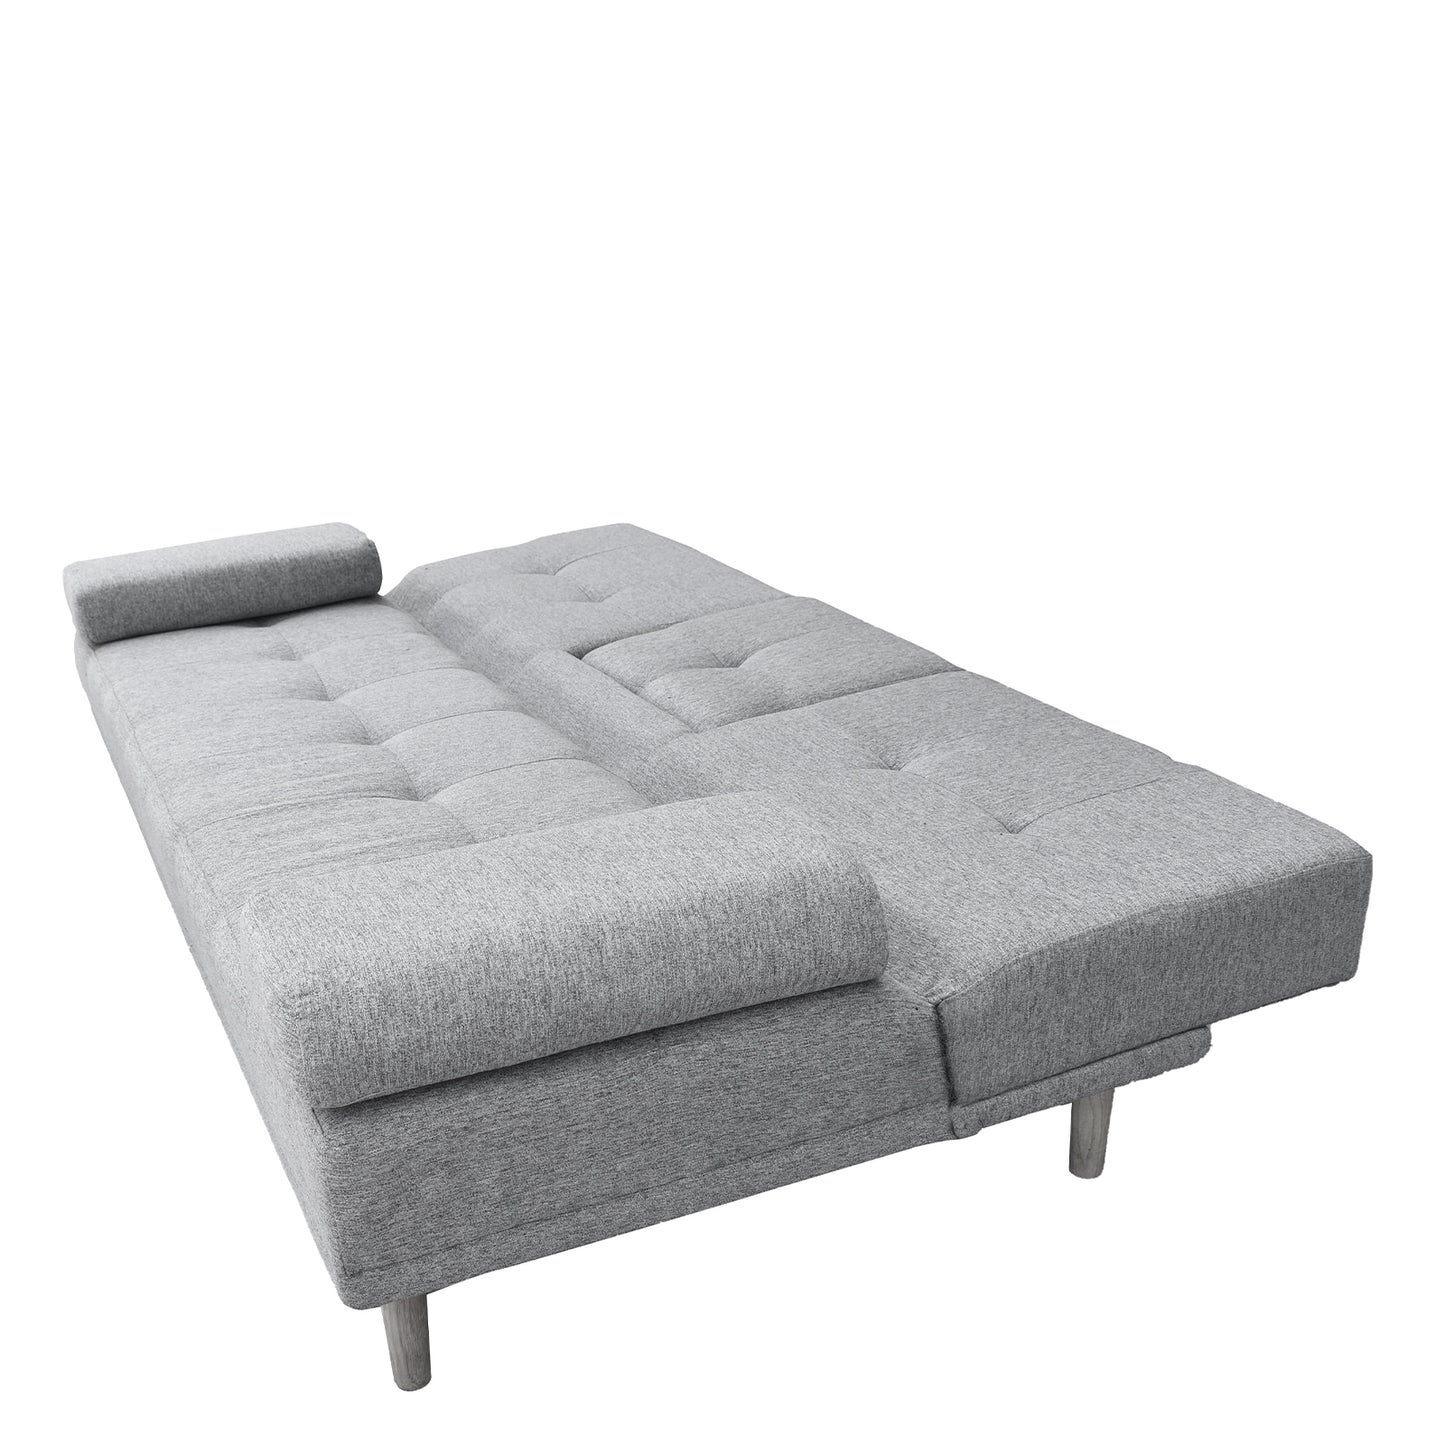 Casa Decor Mendoza 2 in 1 Sofa Bed Couch Grey Pull Down Cupholder 3 Seats Futon